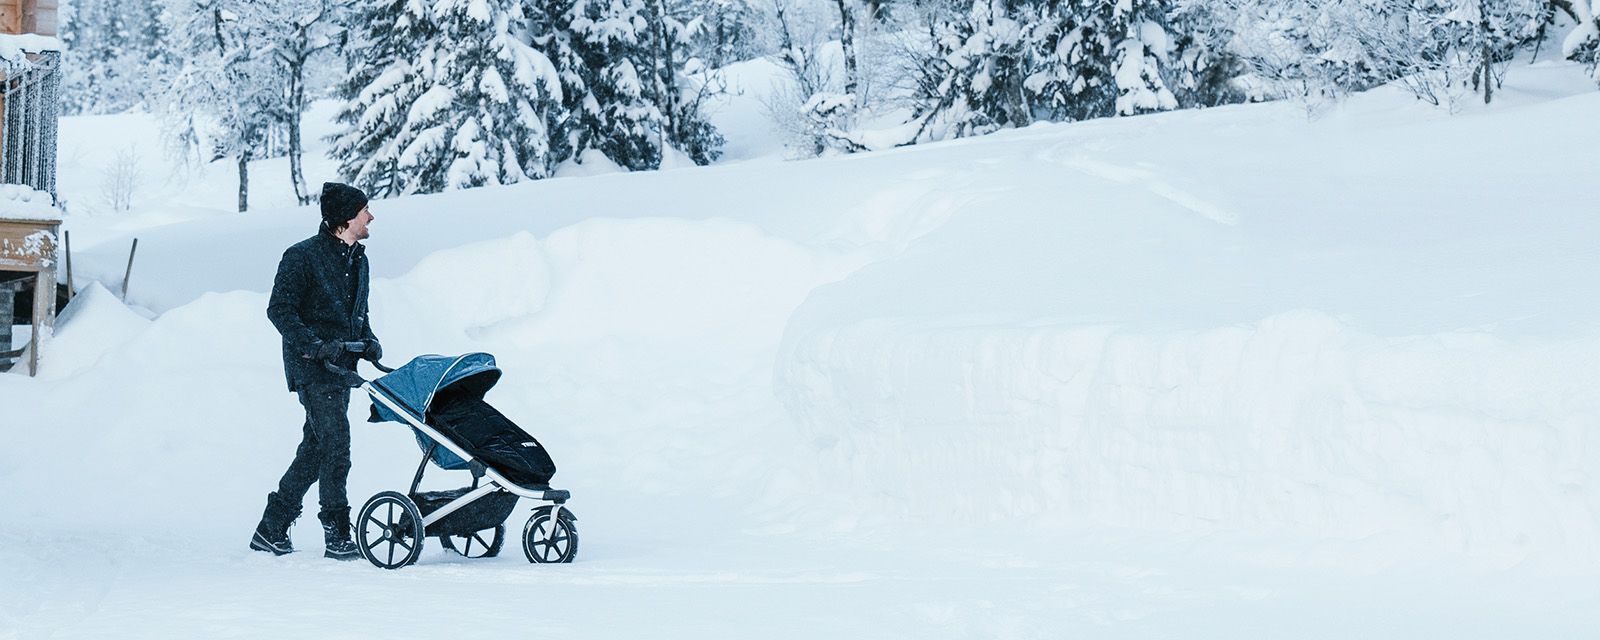 Мужчина катит по снегу вездеходную коляску Thule Urban Glide 2 с черной ножной муфтой.